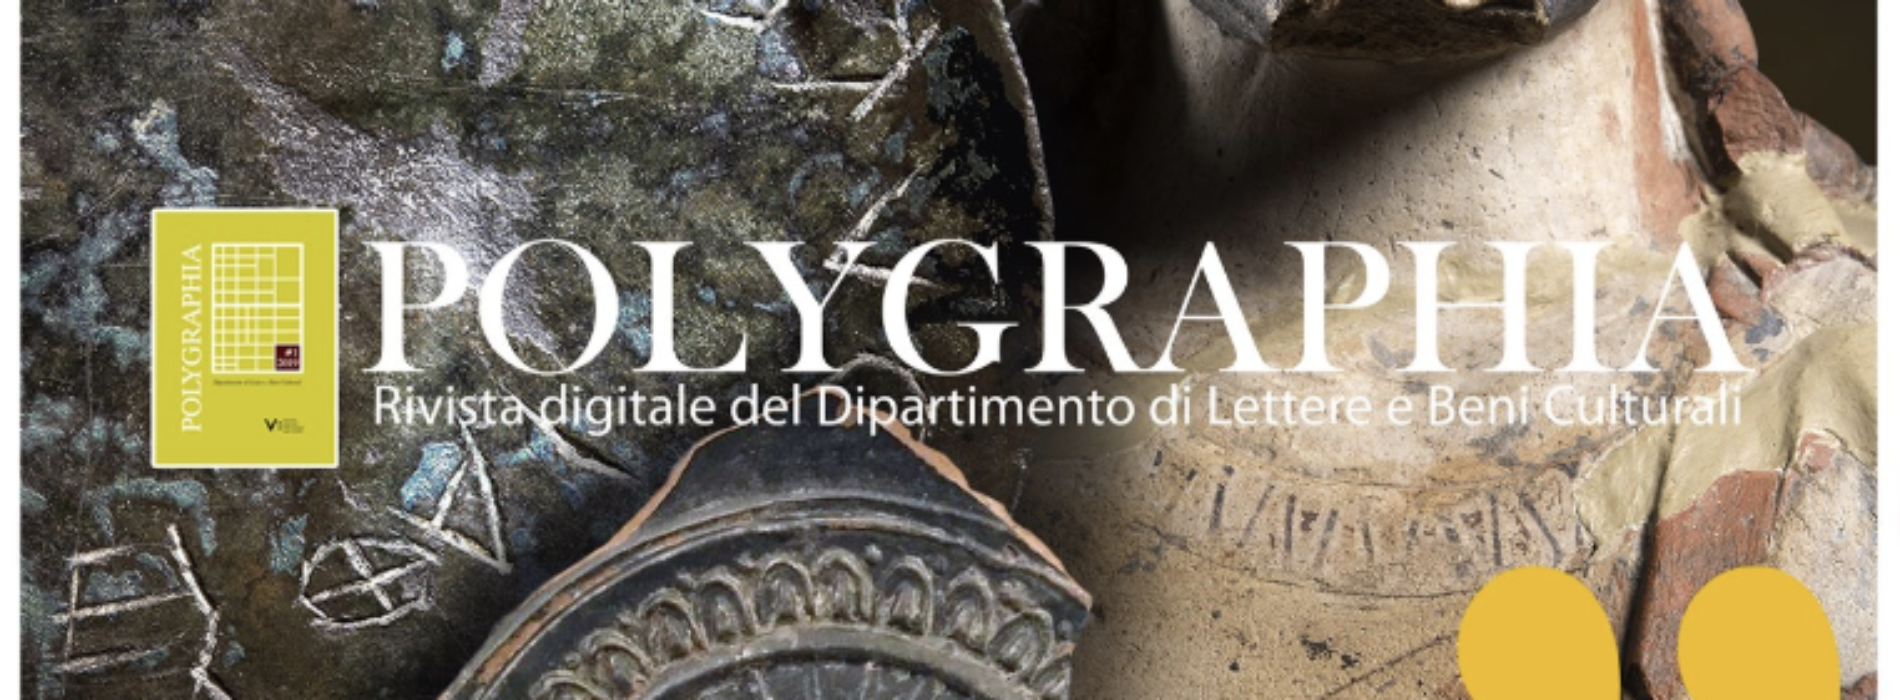 Polygraphia, la rivista digitale del Dipartimento di Lettere